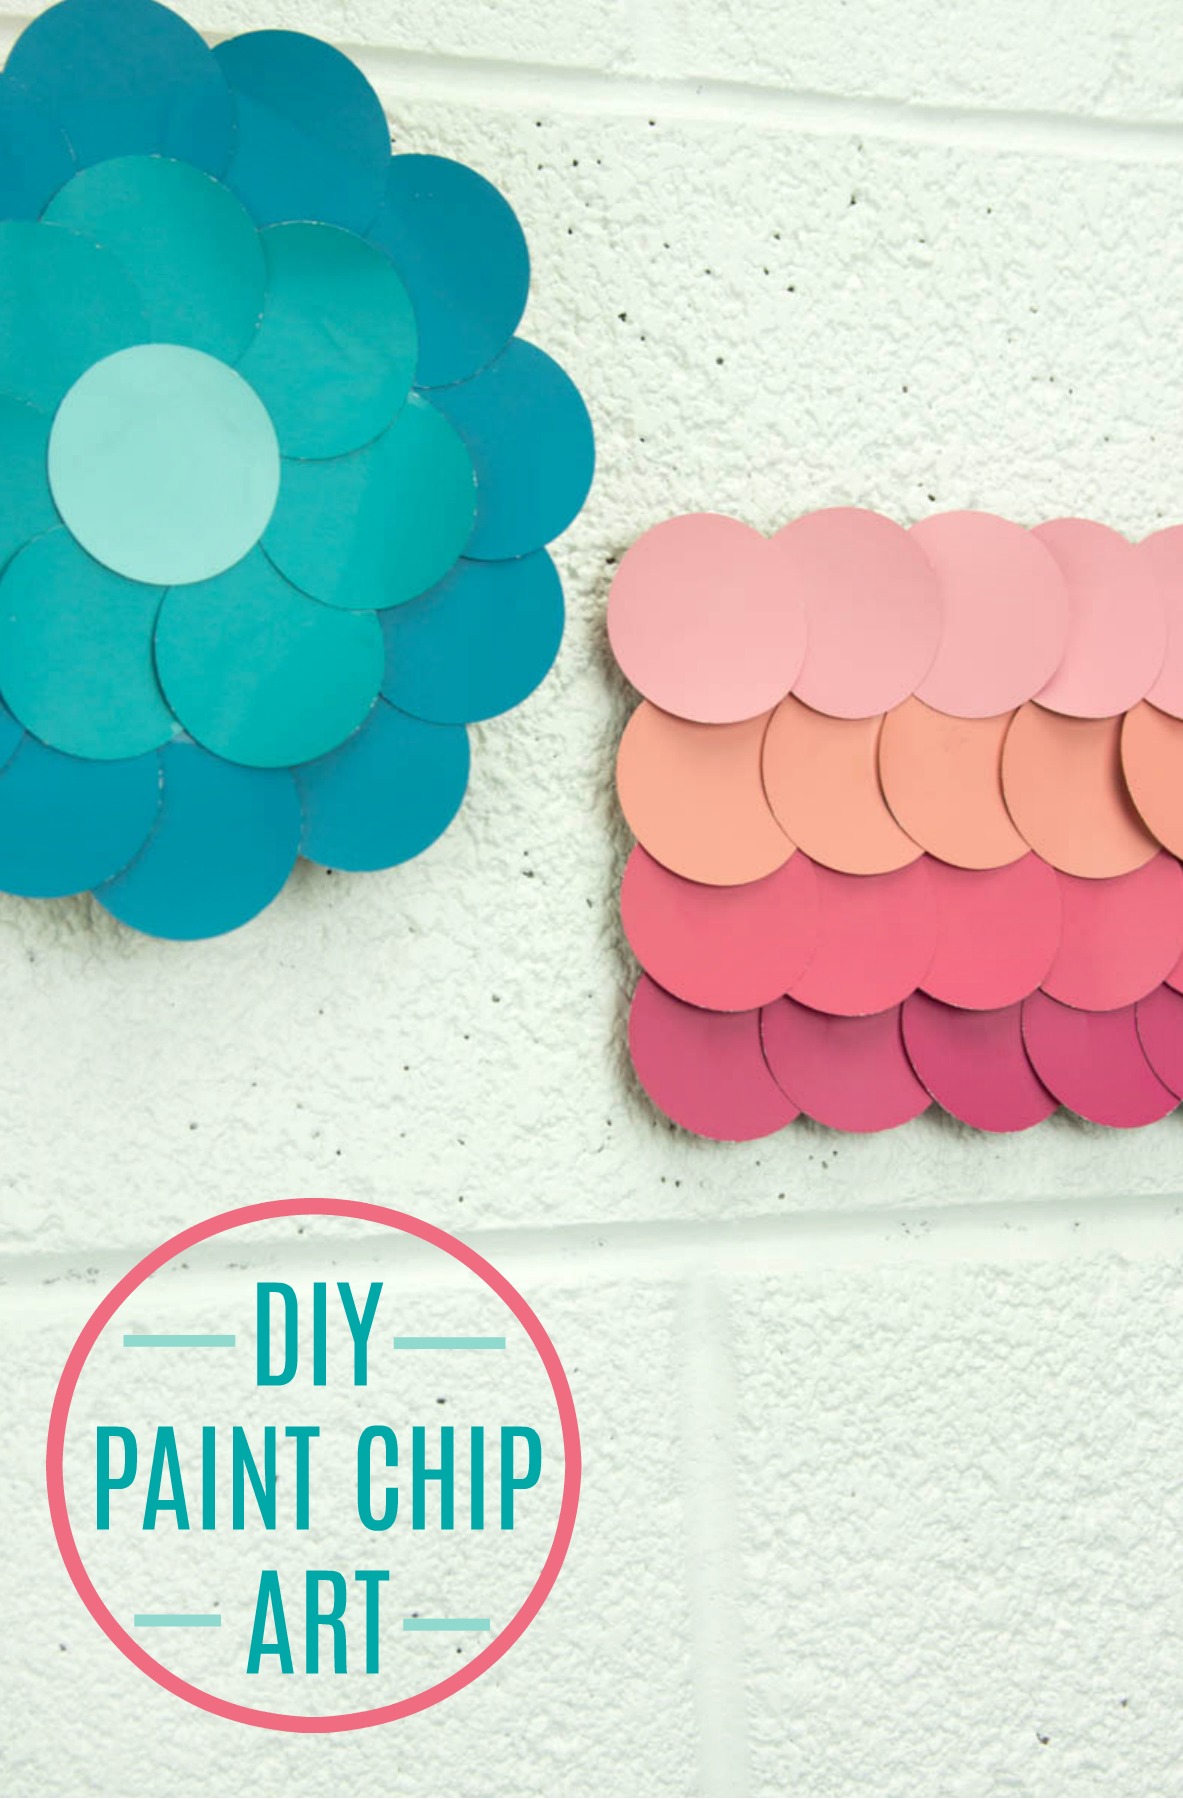 diy paint chip art, diy paint chip ides, paint chip craft, paint chip craft ideas, diy paint chip craft ideas